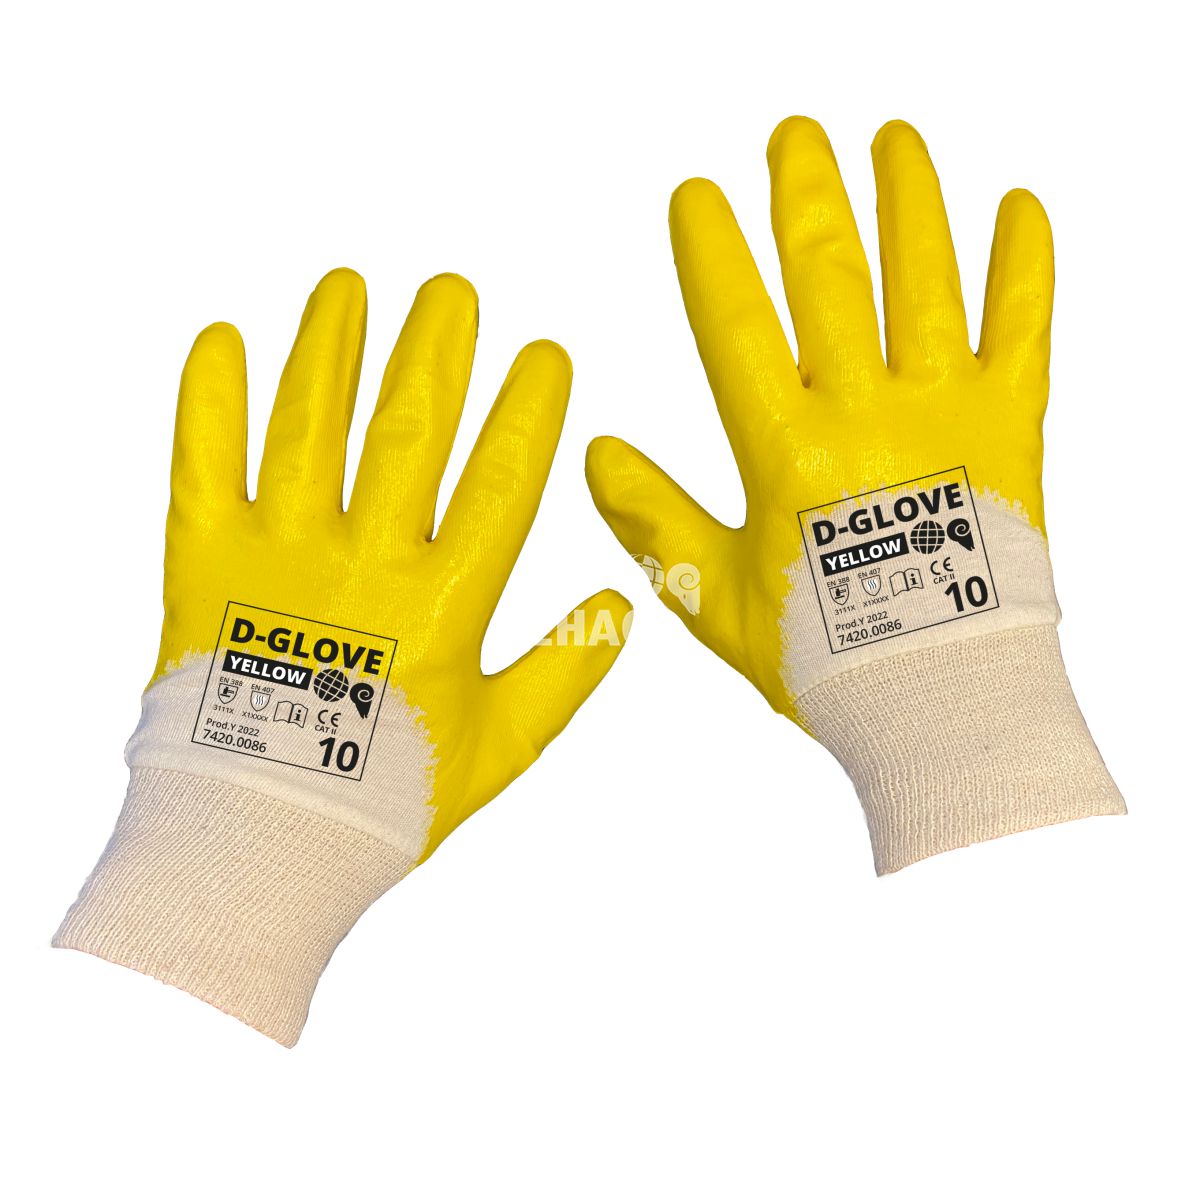 dehaco dglove 321y yellow handschoen nbr coating 9 categorie 2